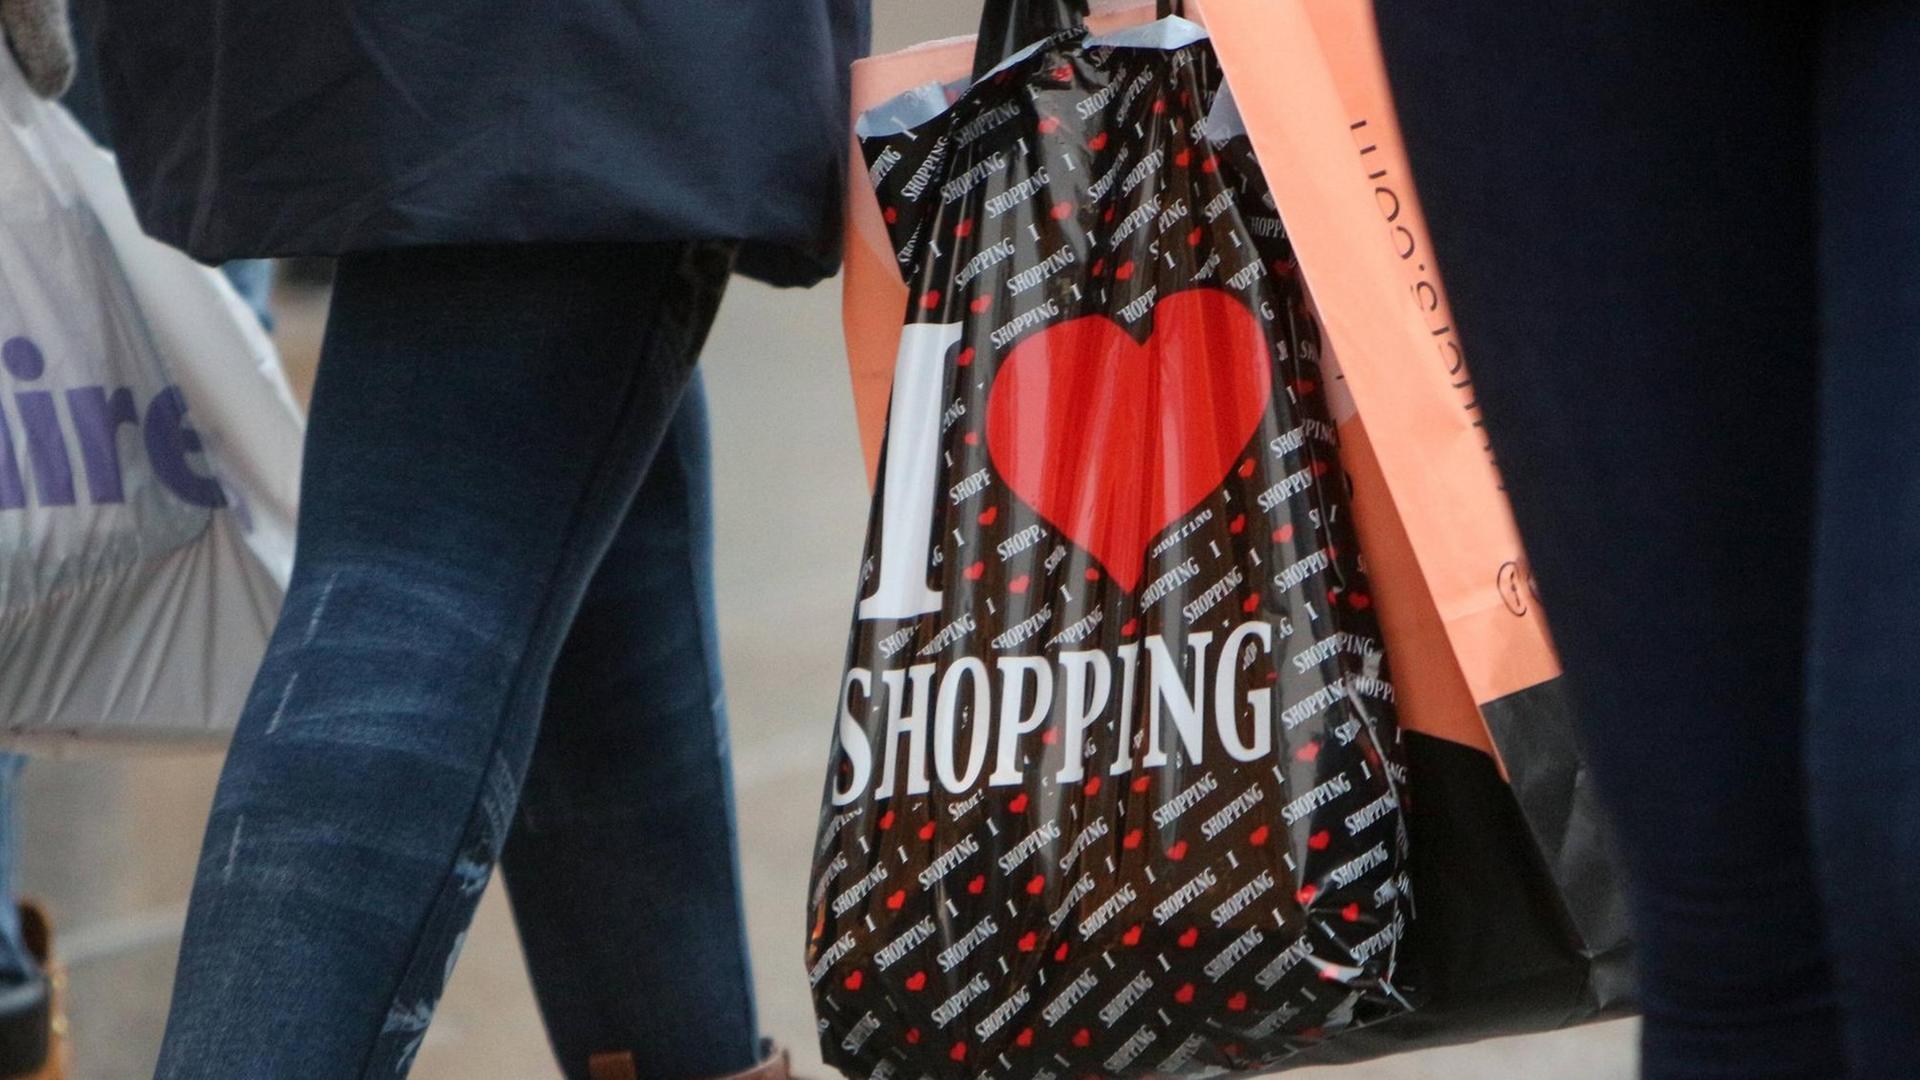 Frau trägt eine Plastiktüte mit Aufschrift "I Love Shopping"